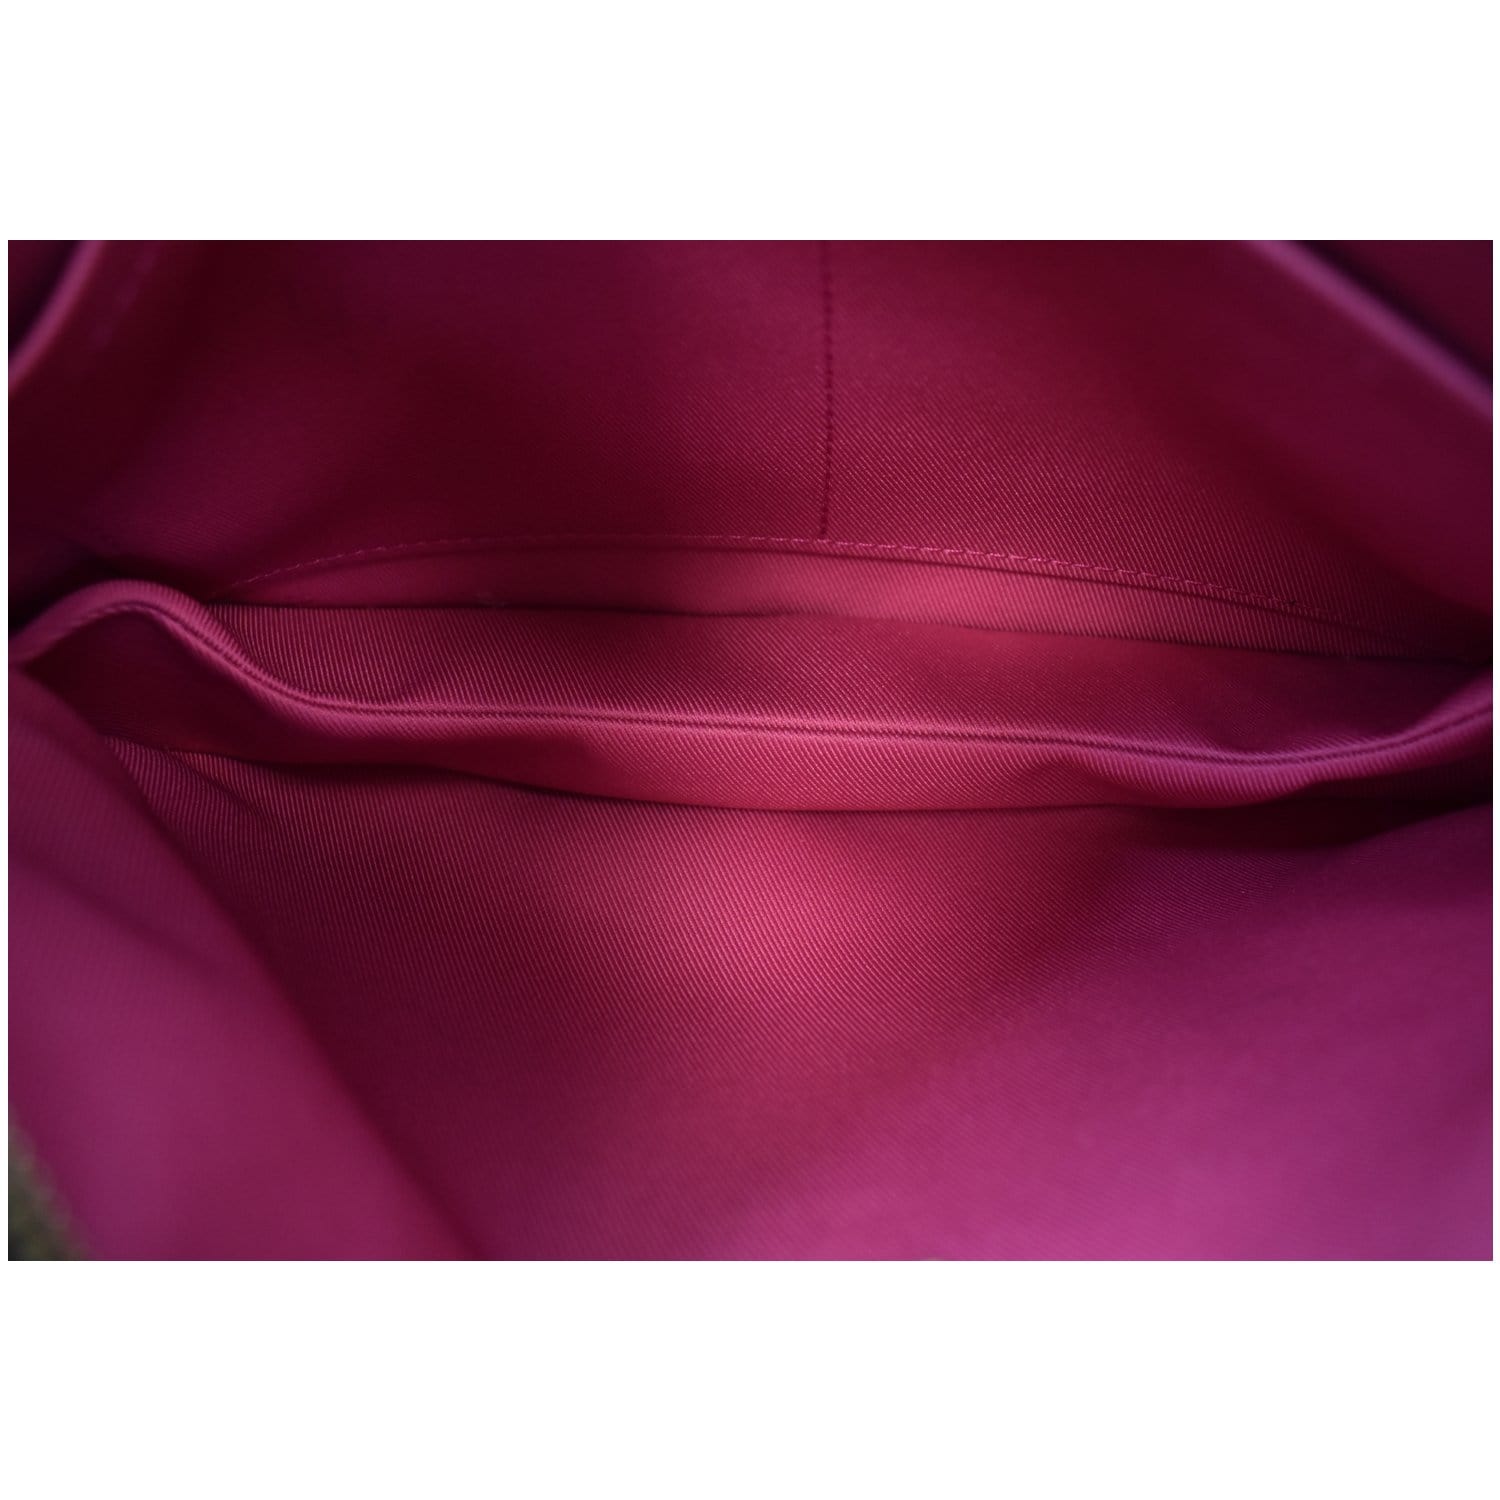 LOUIS VUITTON Monogram Lorette Hot Pink | FASHIONPHILE